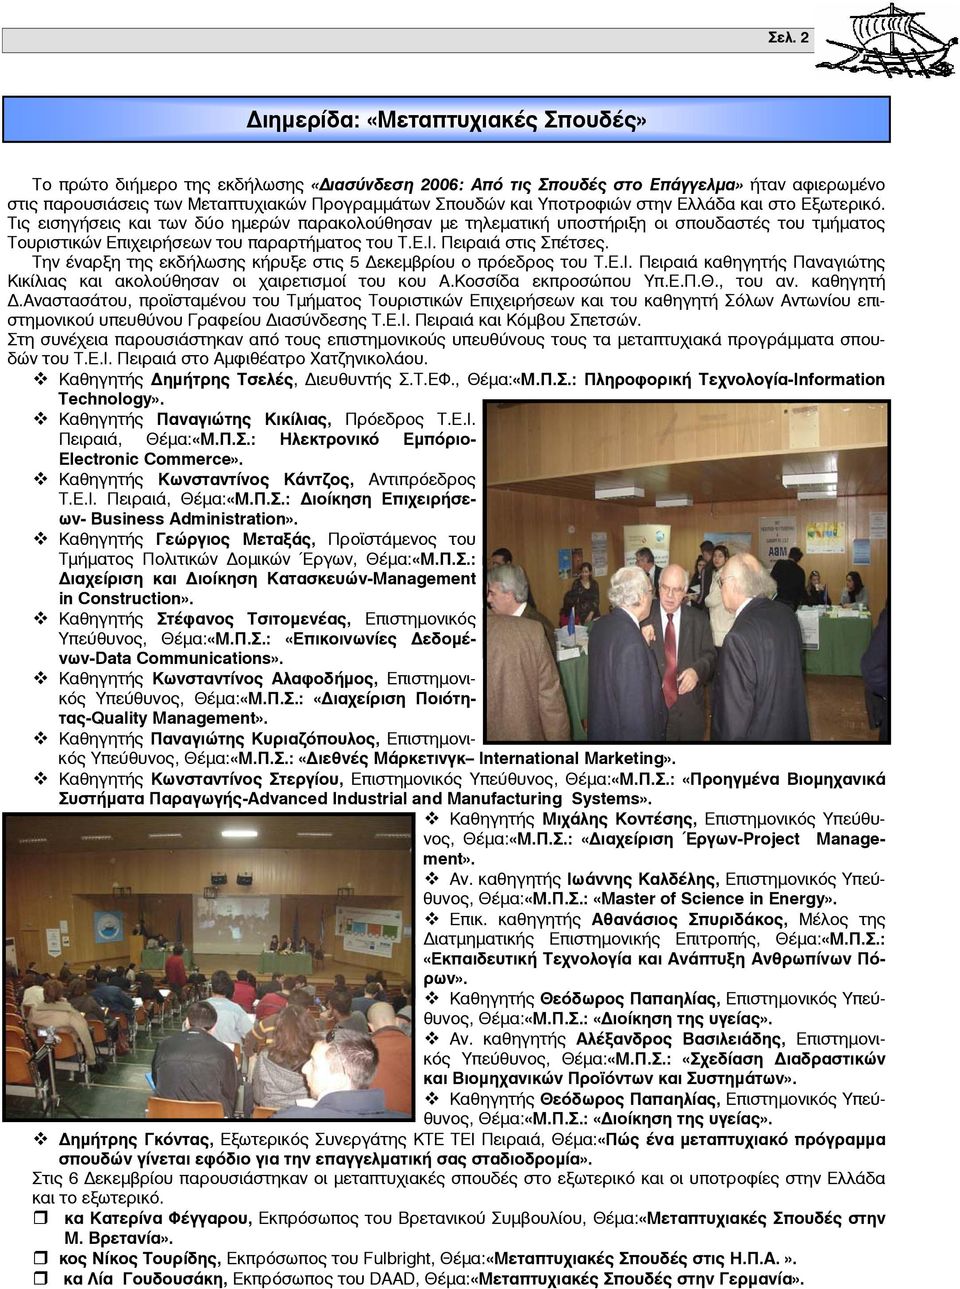 Πειραιά στις Σπέτσες. Την έναρξη της εκδήλωσης κήρυξε στις 5 εκεμβρίου ο πρόεδρος του Τ.Ε.Ι. Πειραιά καθηγητής Παναγιώτης Κικίλιας και ακολούθησαν οι χαιρετισμοί του κου Α.Κοσσίδα εκπροσώπου Υπ.Ε.Π.Θ.